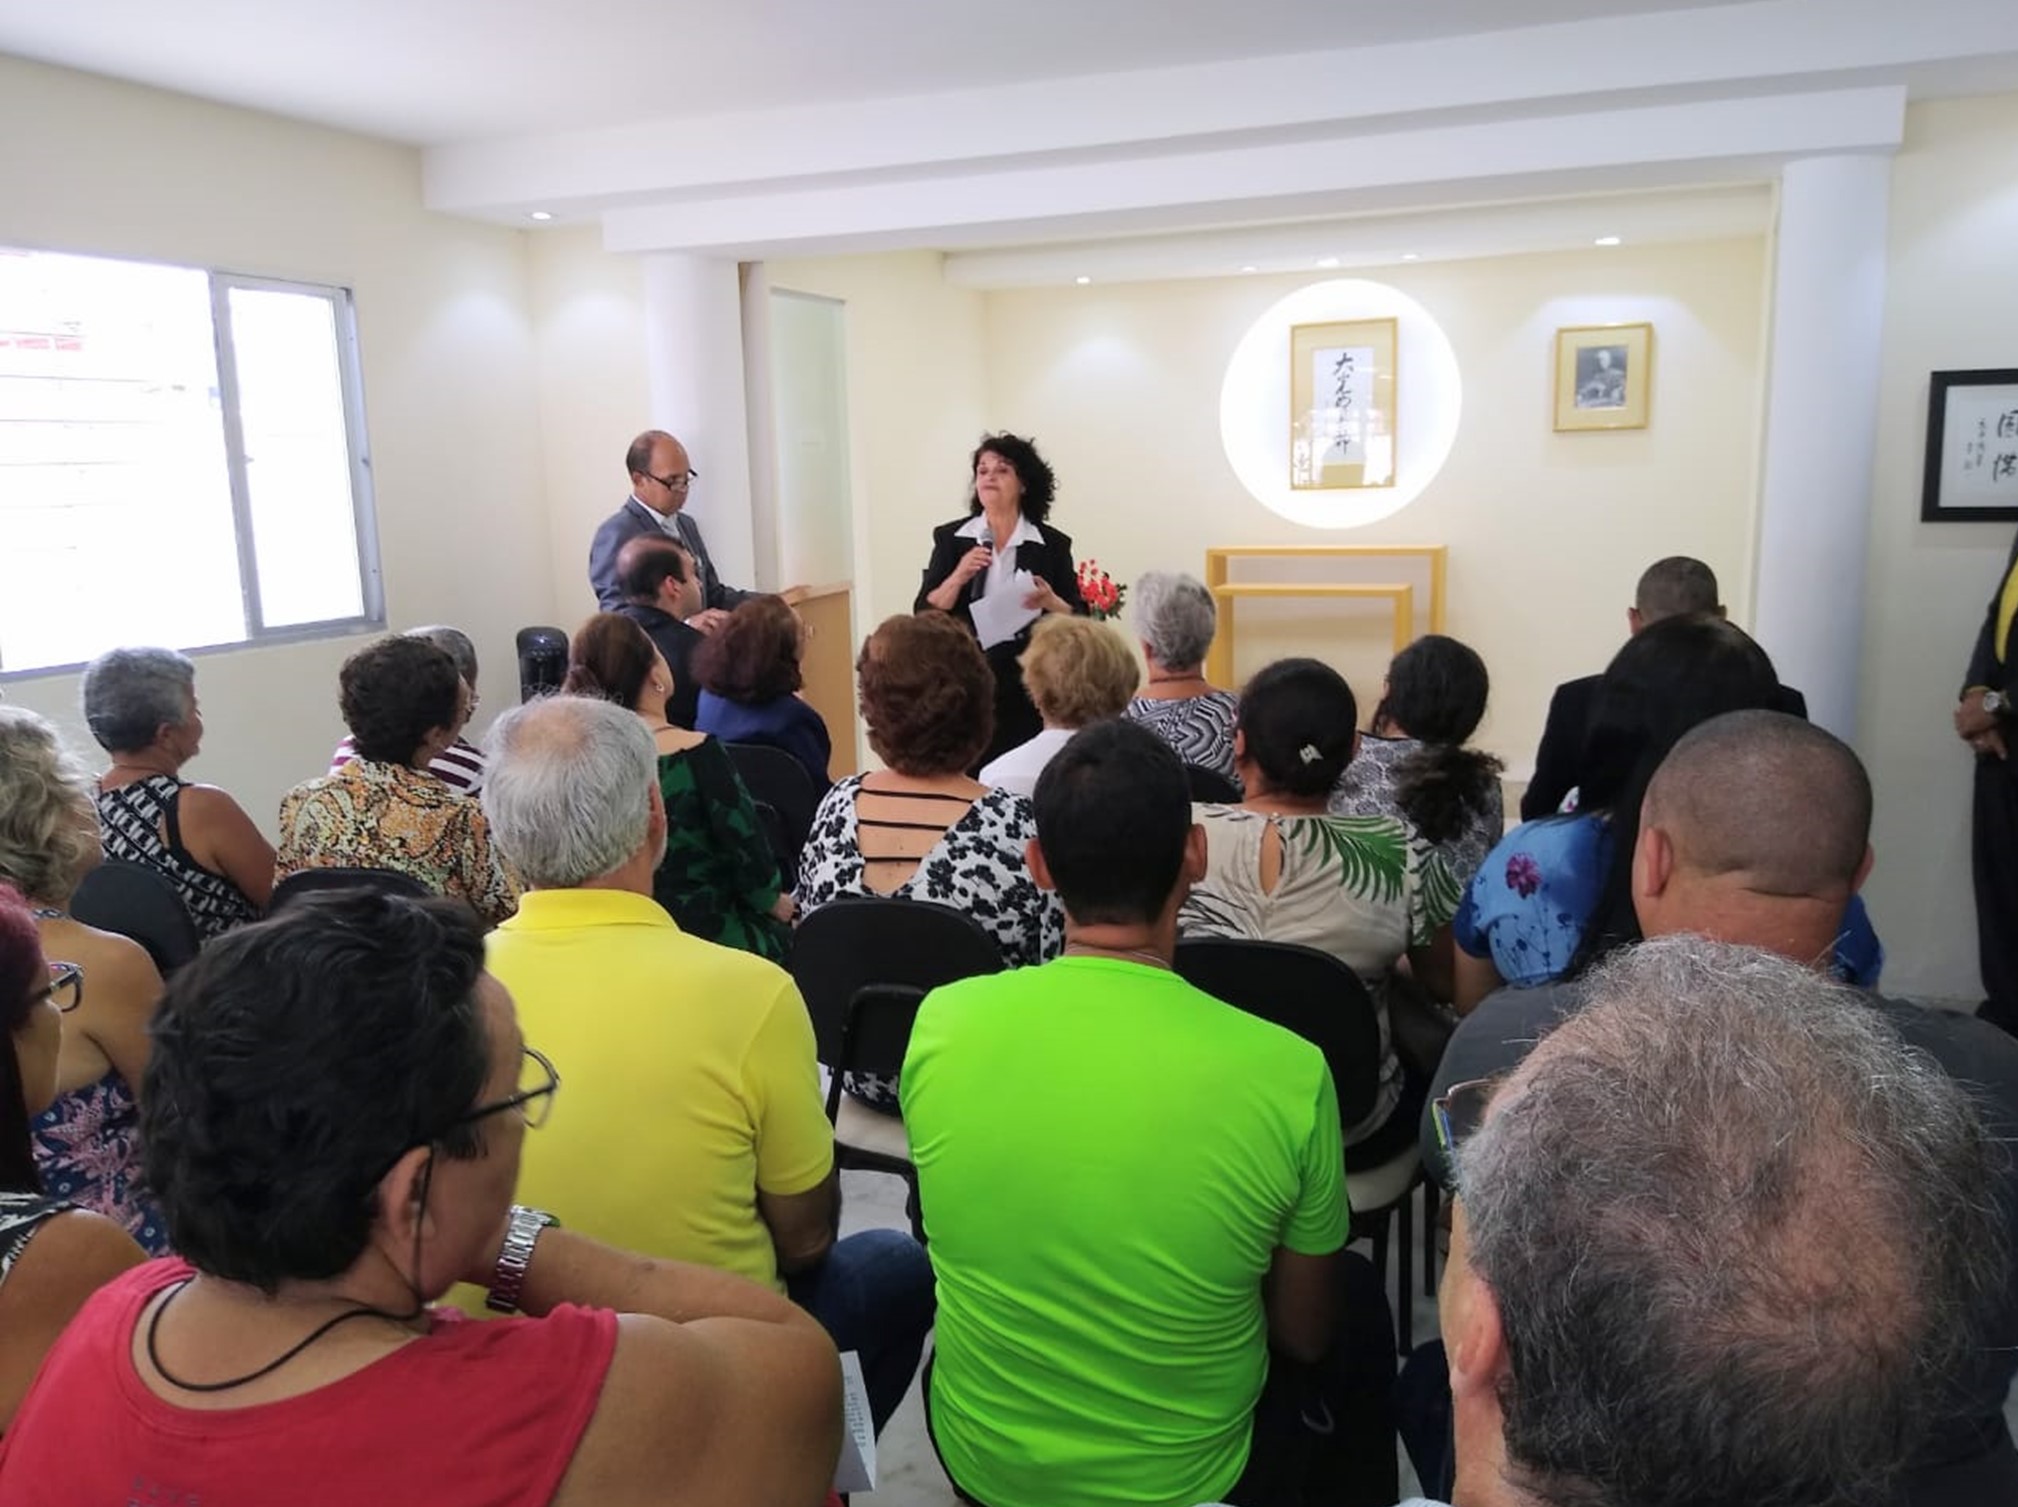 Imersão nas práticas básicas da fé encanta frequentadores de Recife